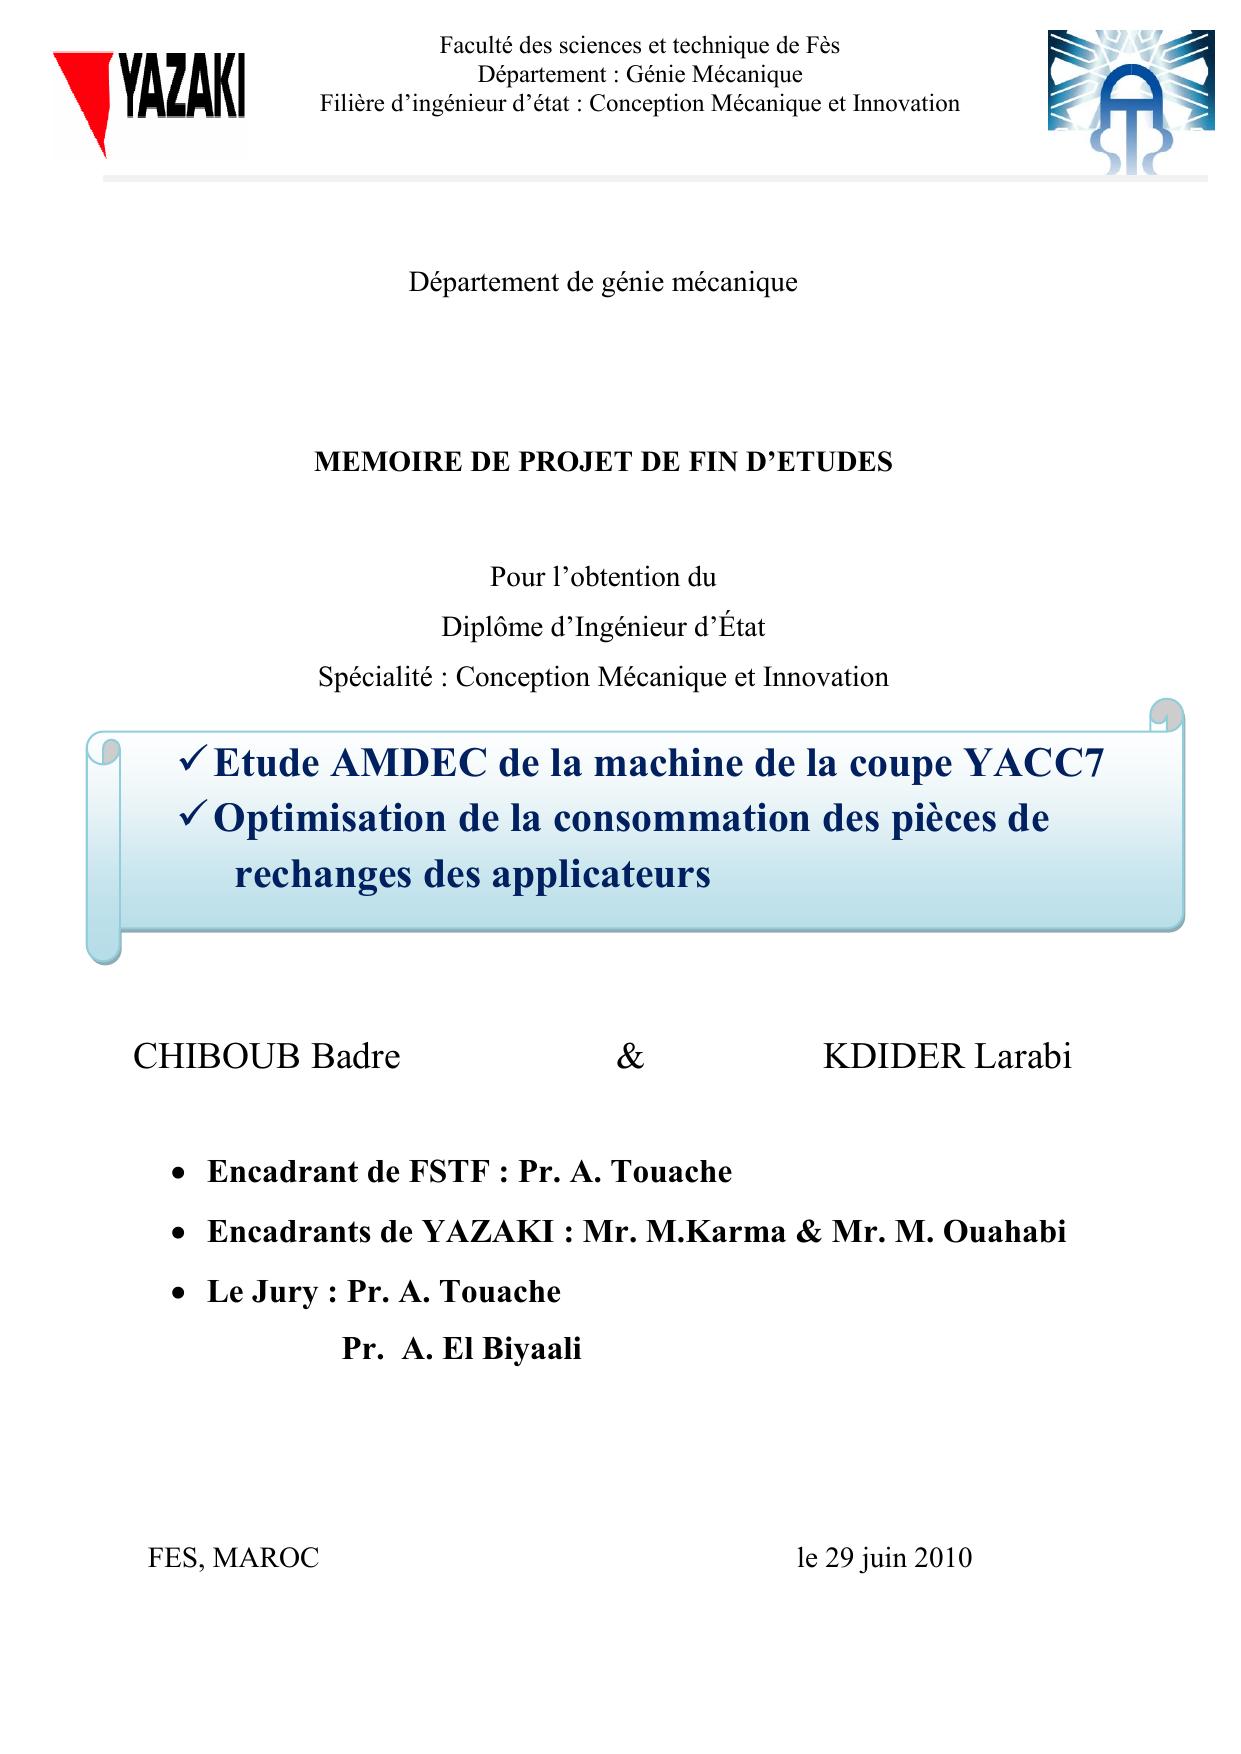 Etude AMDEC de la machine de la coupe YACC7  Optimisation de la consommation des pièces de rechanges des applicateurs